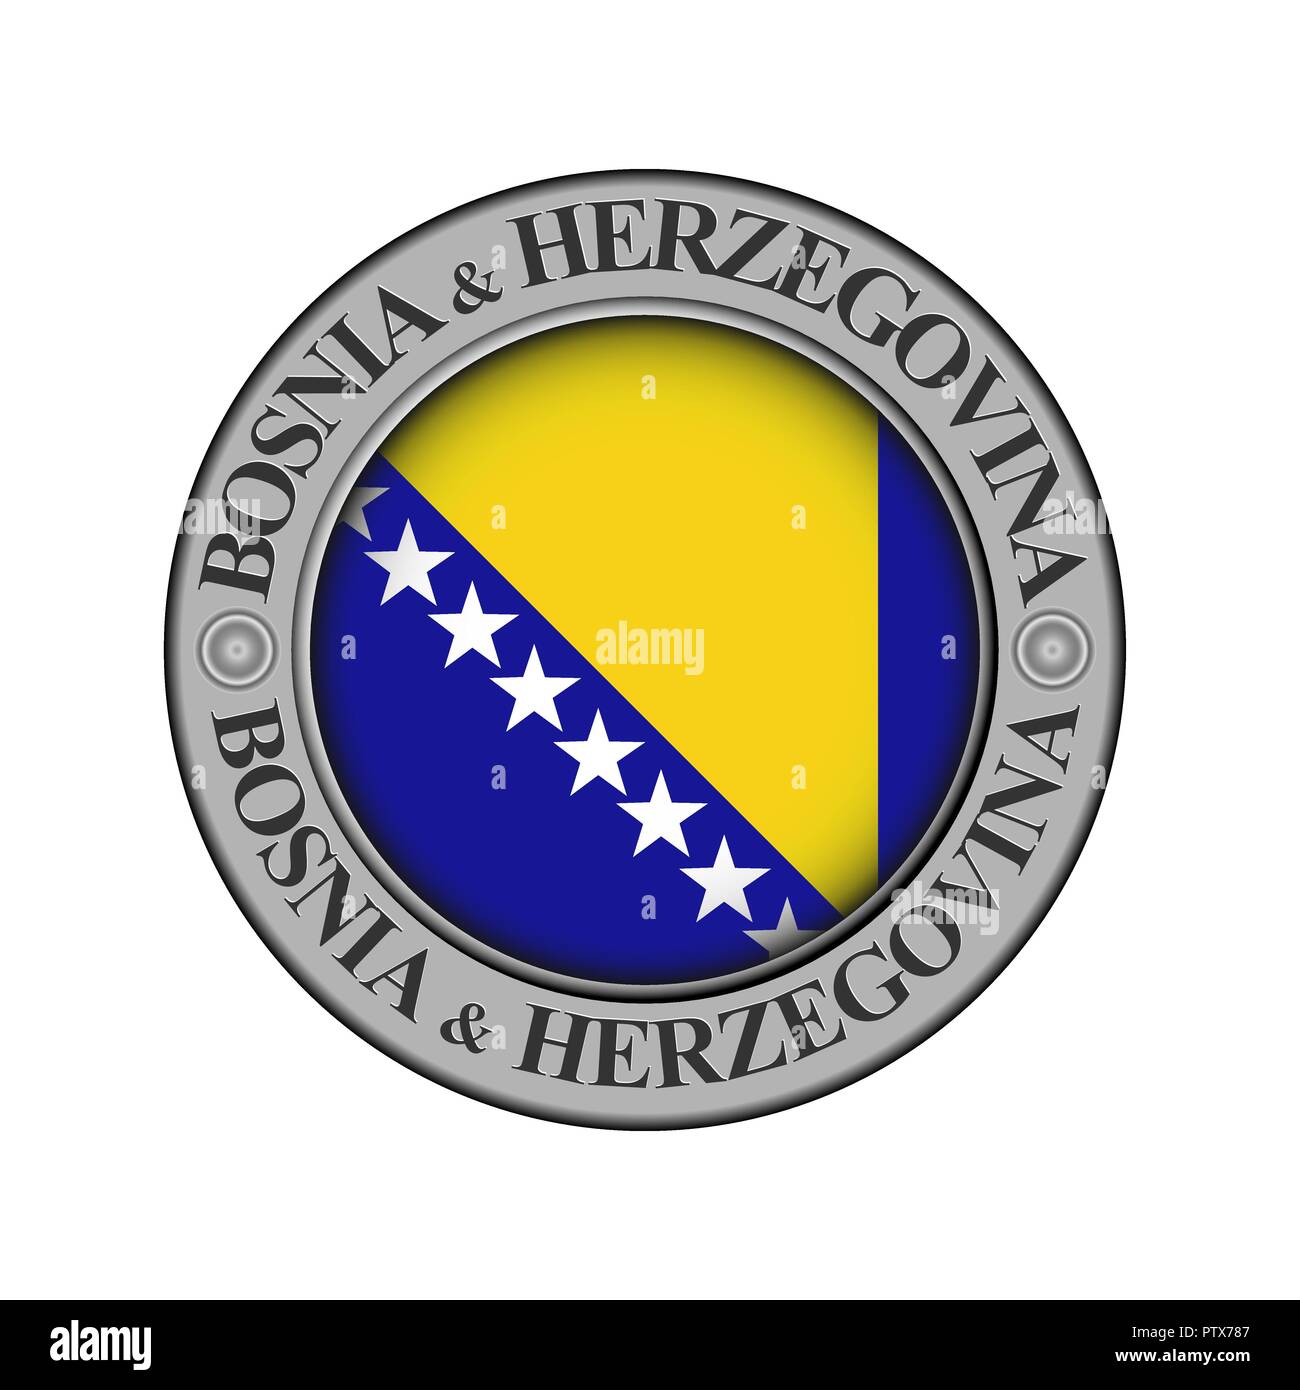 Rotondo di metallo medaglione con il nome del paese di Bosnia ed Erzegovina e un indicatore rotondo nel centro Illustrazione Vettoriale